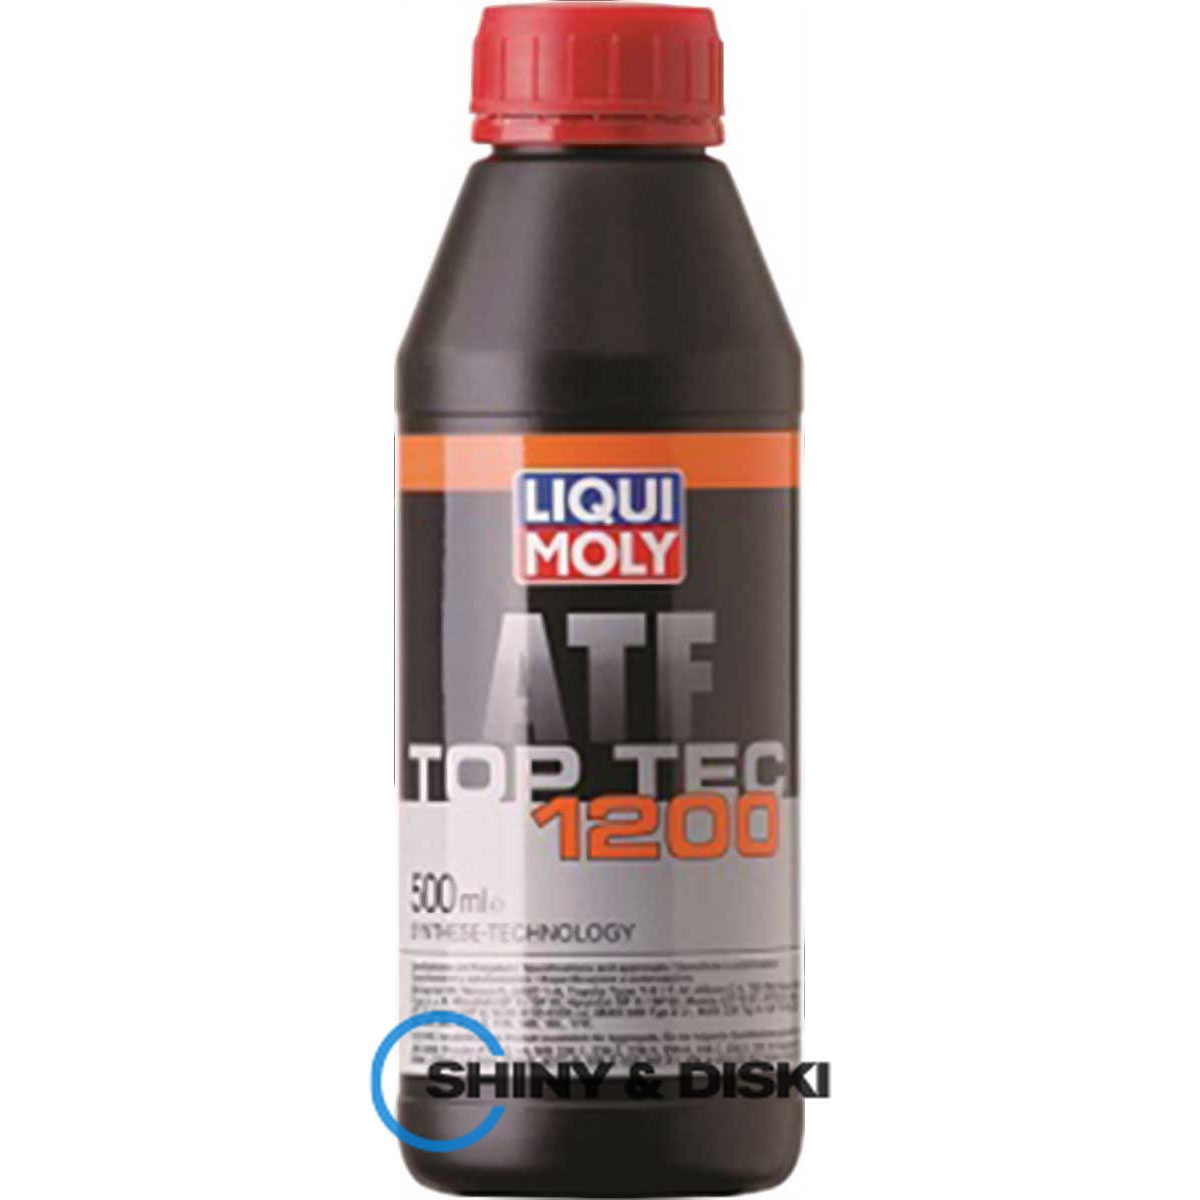 liqui moly top tec atf 1200 (0.5л)